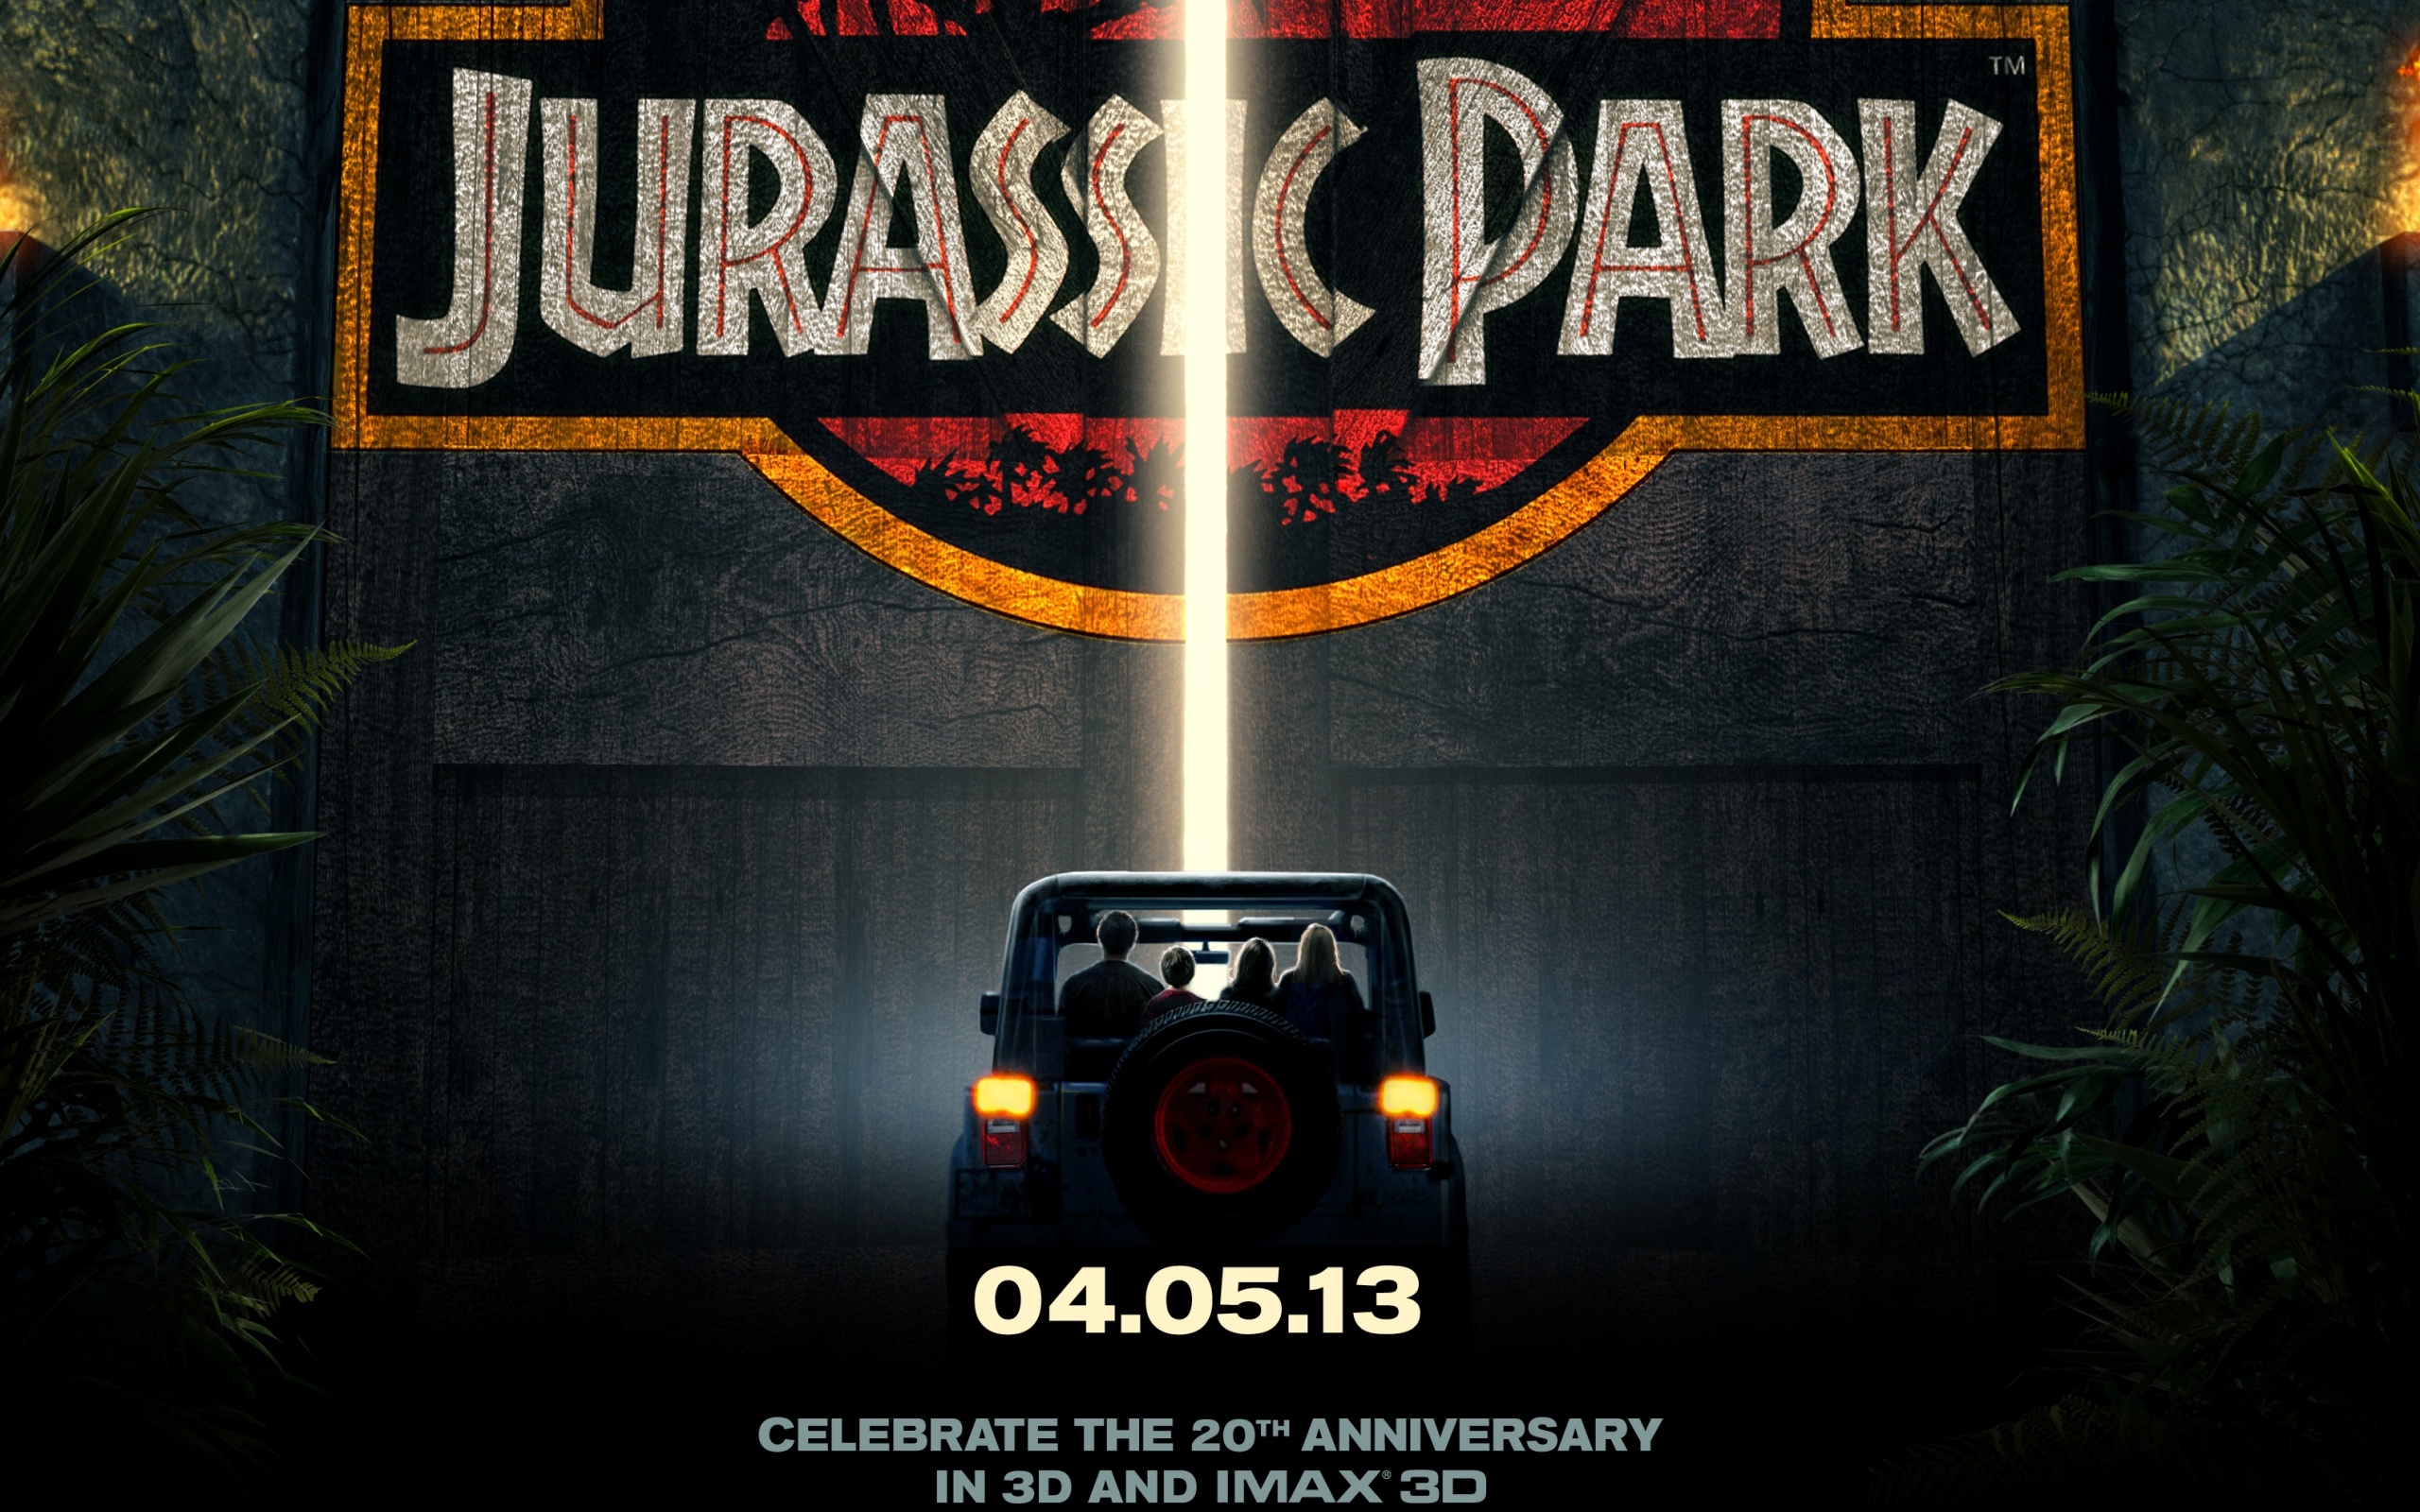 [44+] Jurassic Park Logo Wallpapers | WallpaperSafari